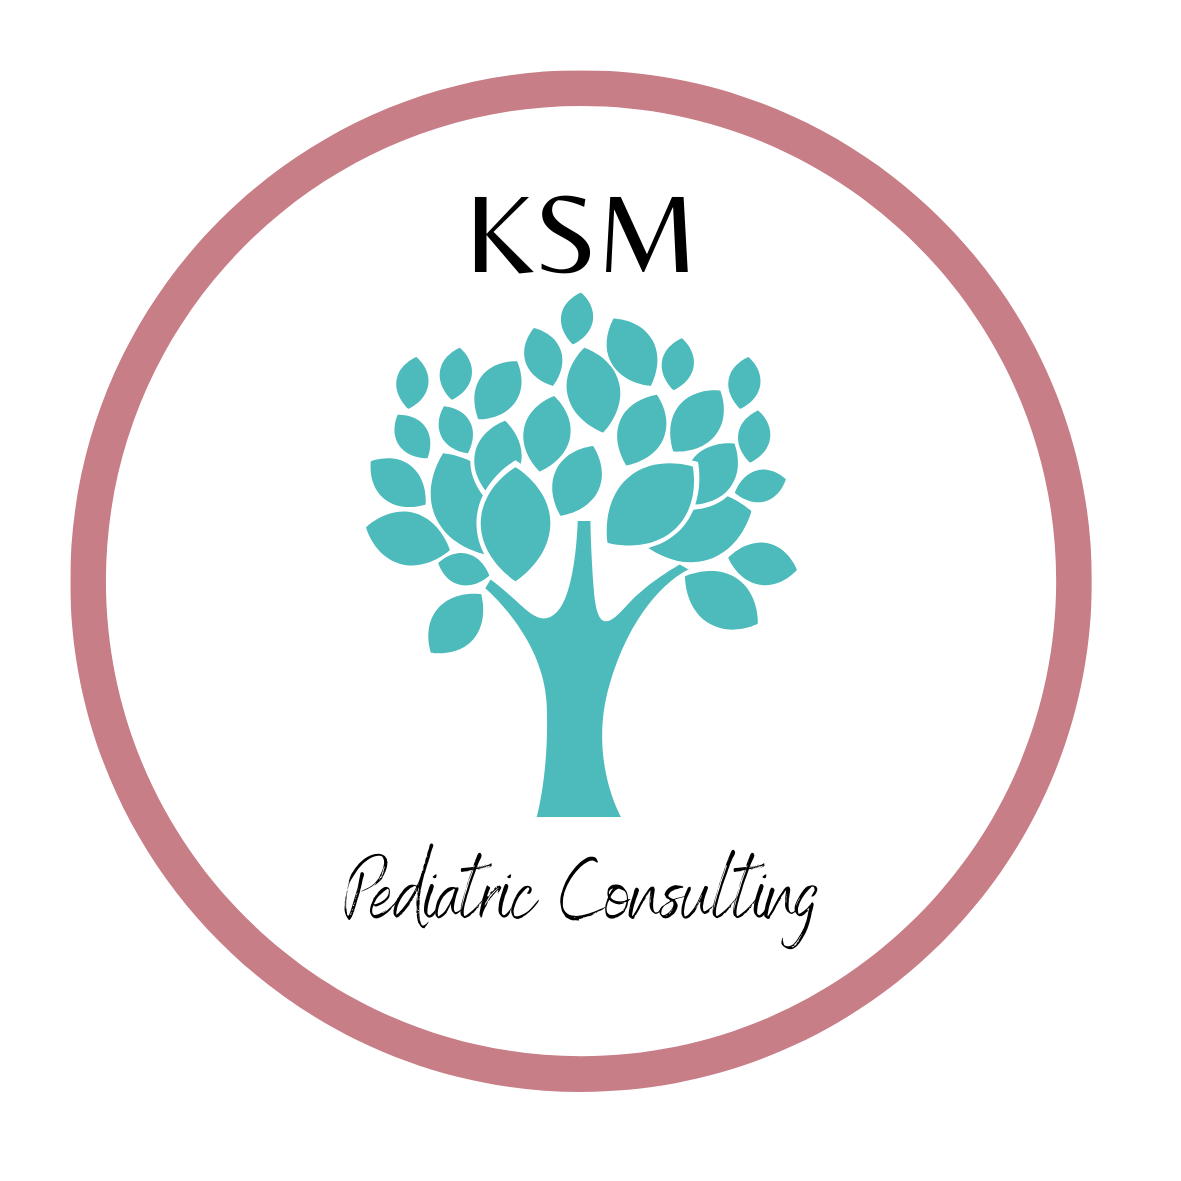 KSM Pediatric Consulting